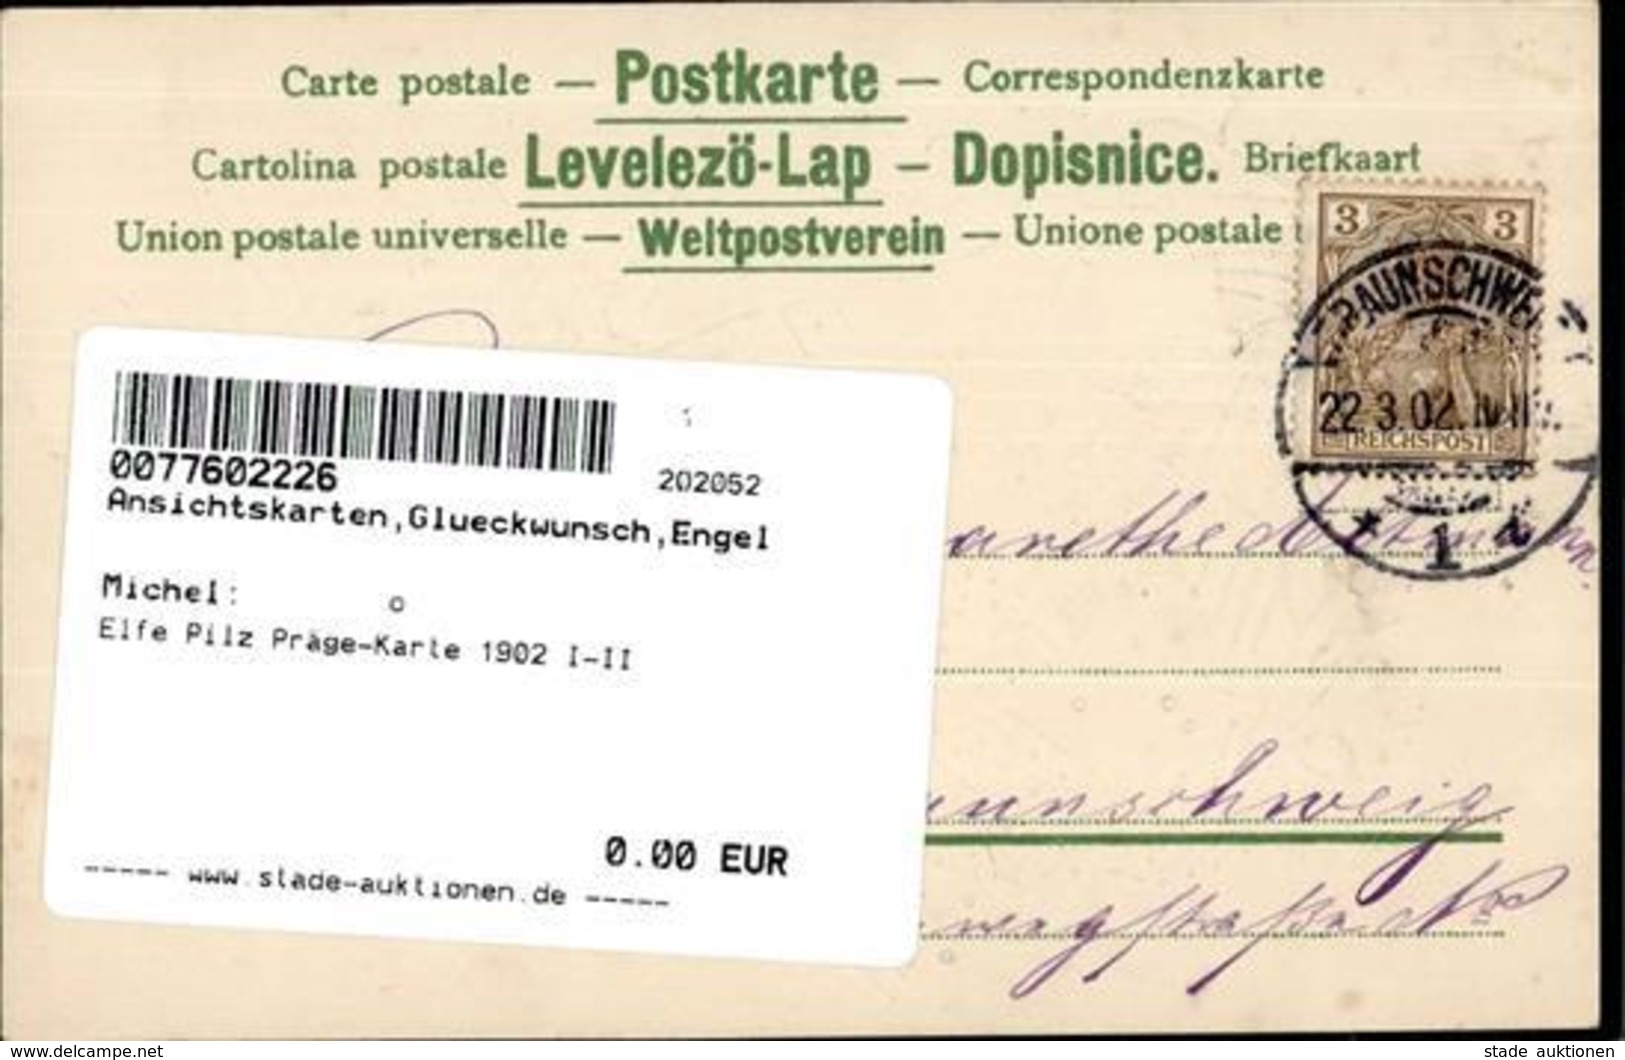 Elfe Pilz Präge-Karte 1902 I-II - Engel